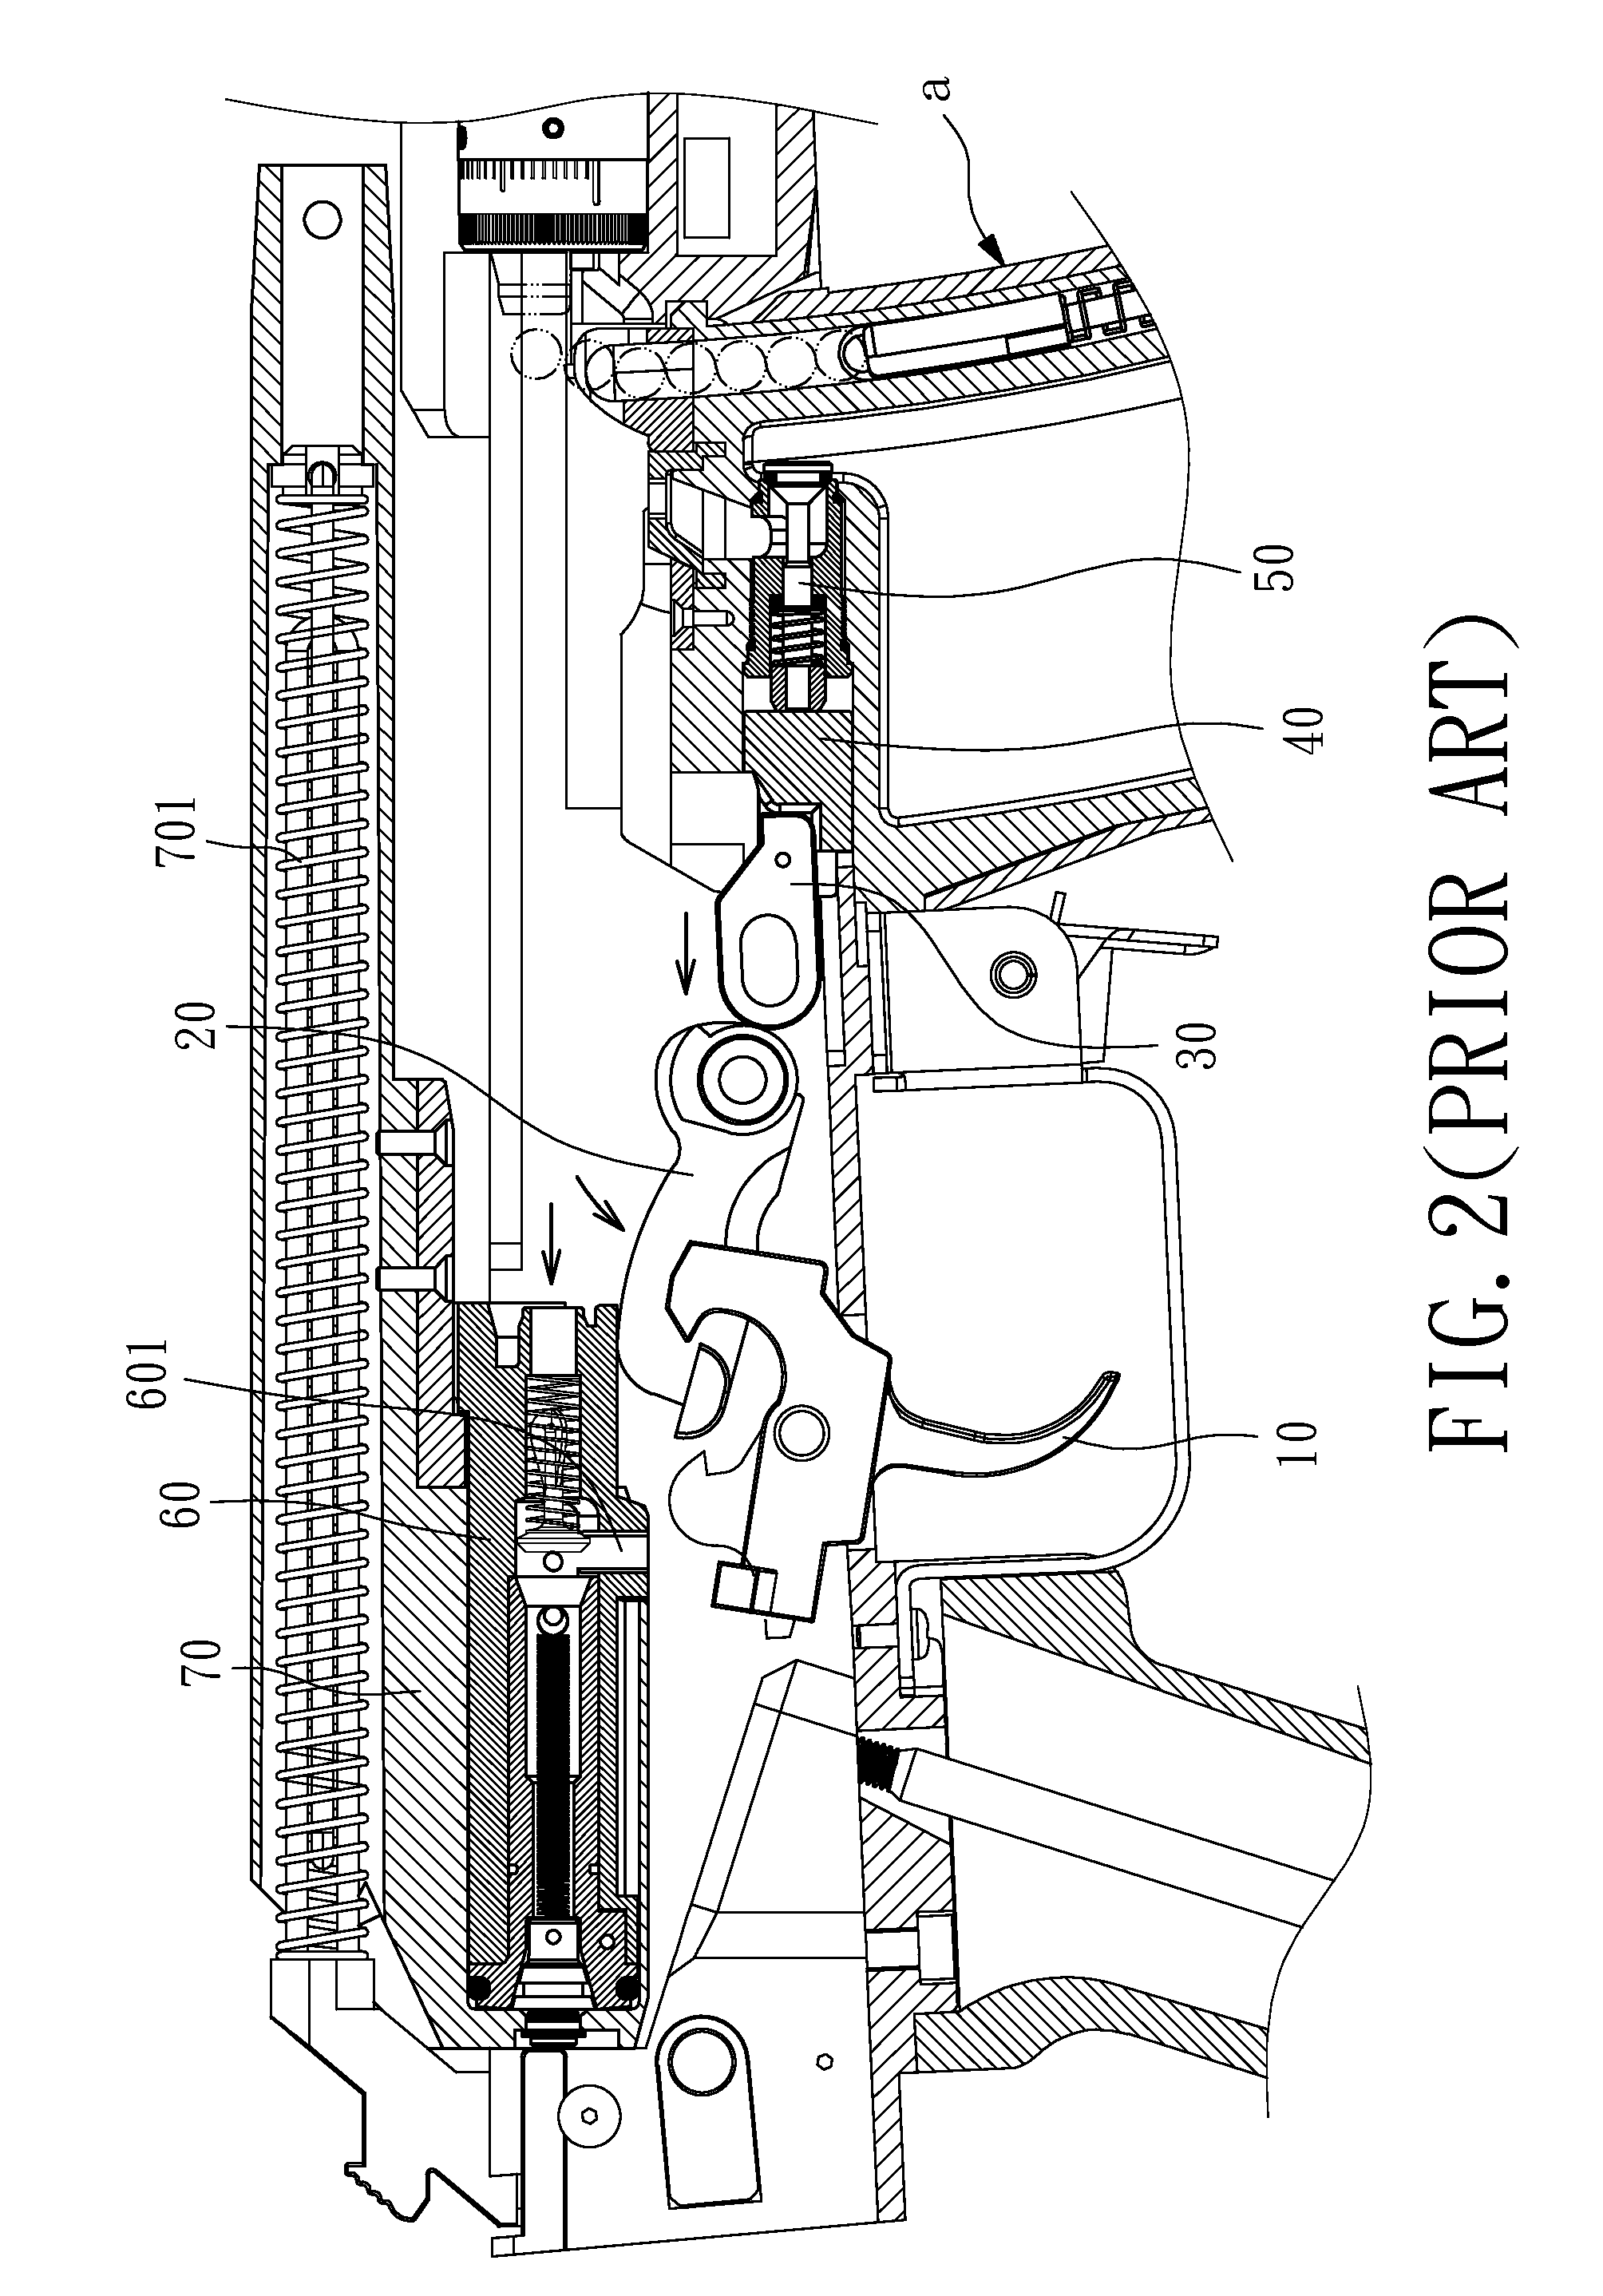 Cartridge box of pneumatic toy gun